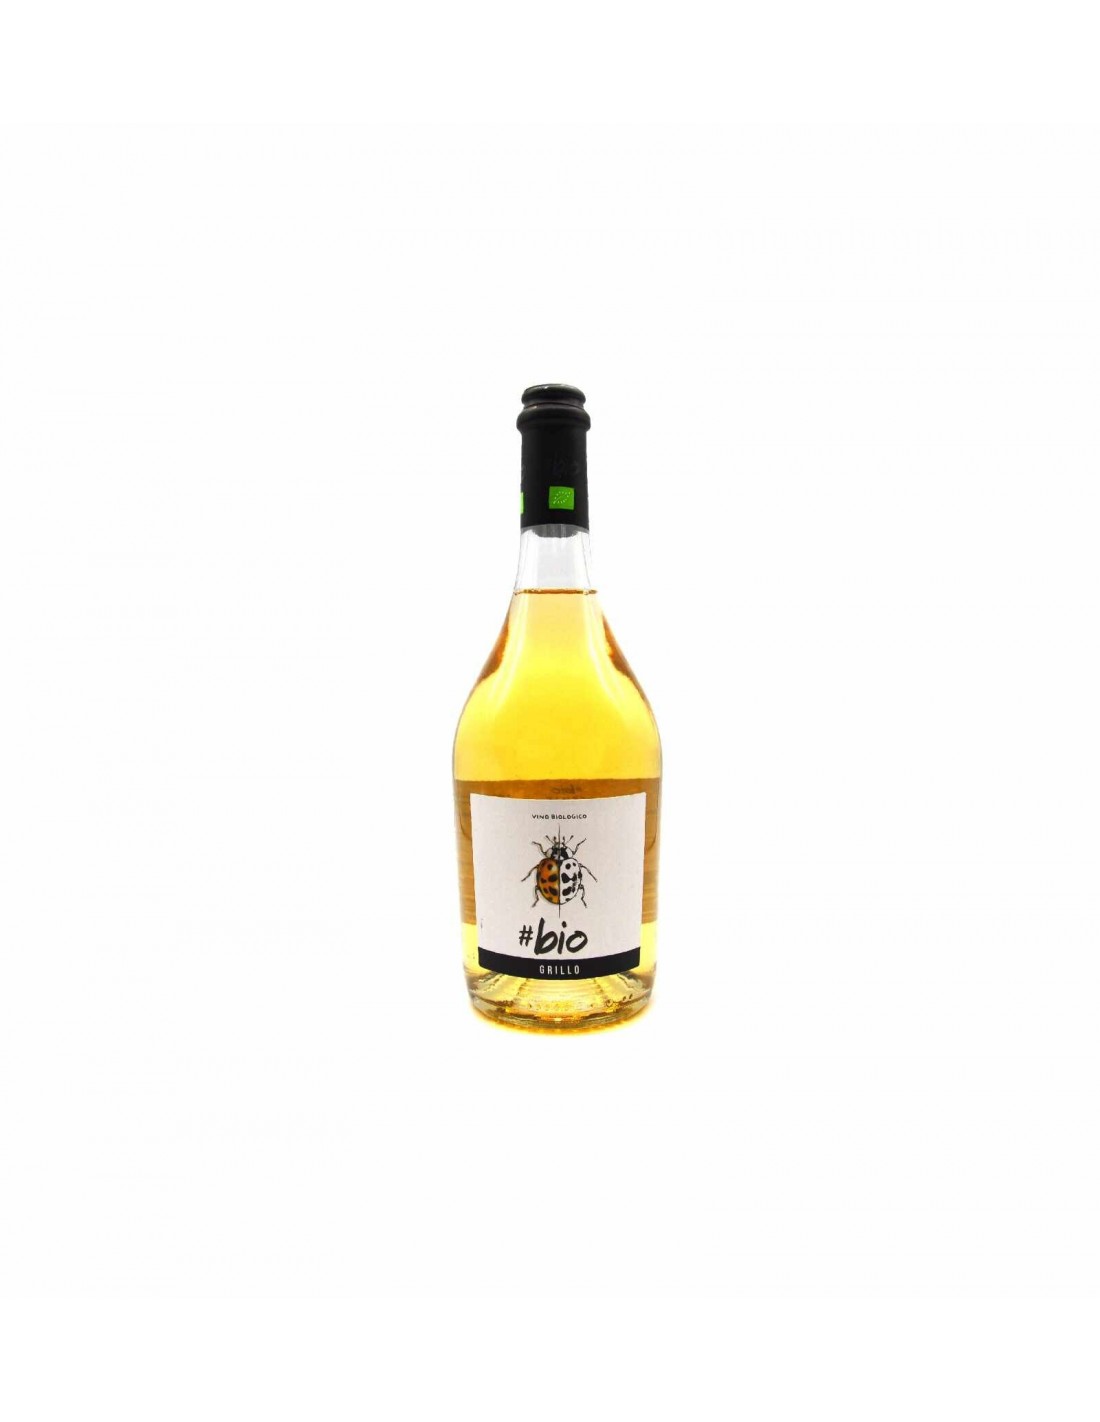 Vin alb organic, Grillo, Bio Sicilia, 0.75L, 12.5% alc., Italia alcooldiscount.ro